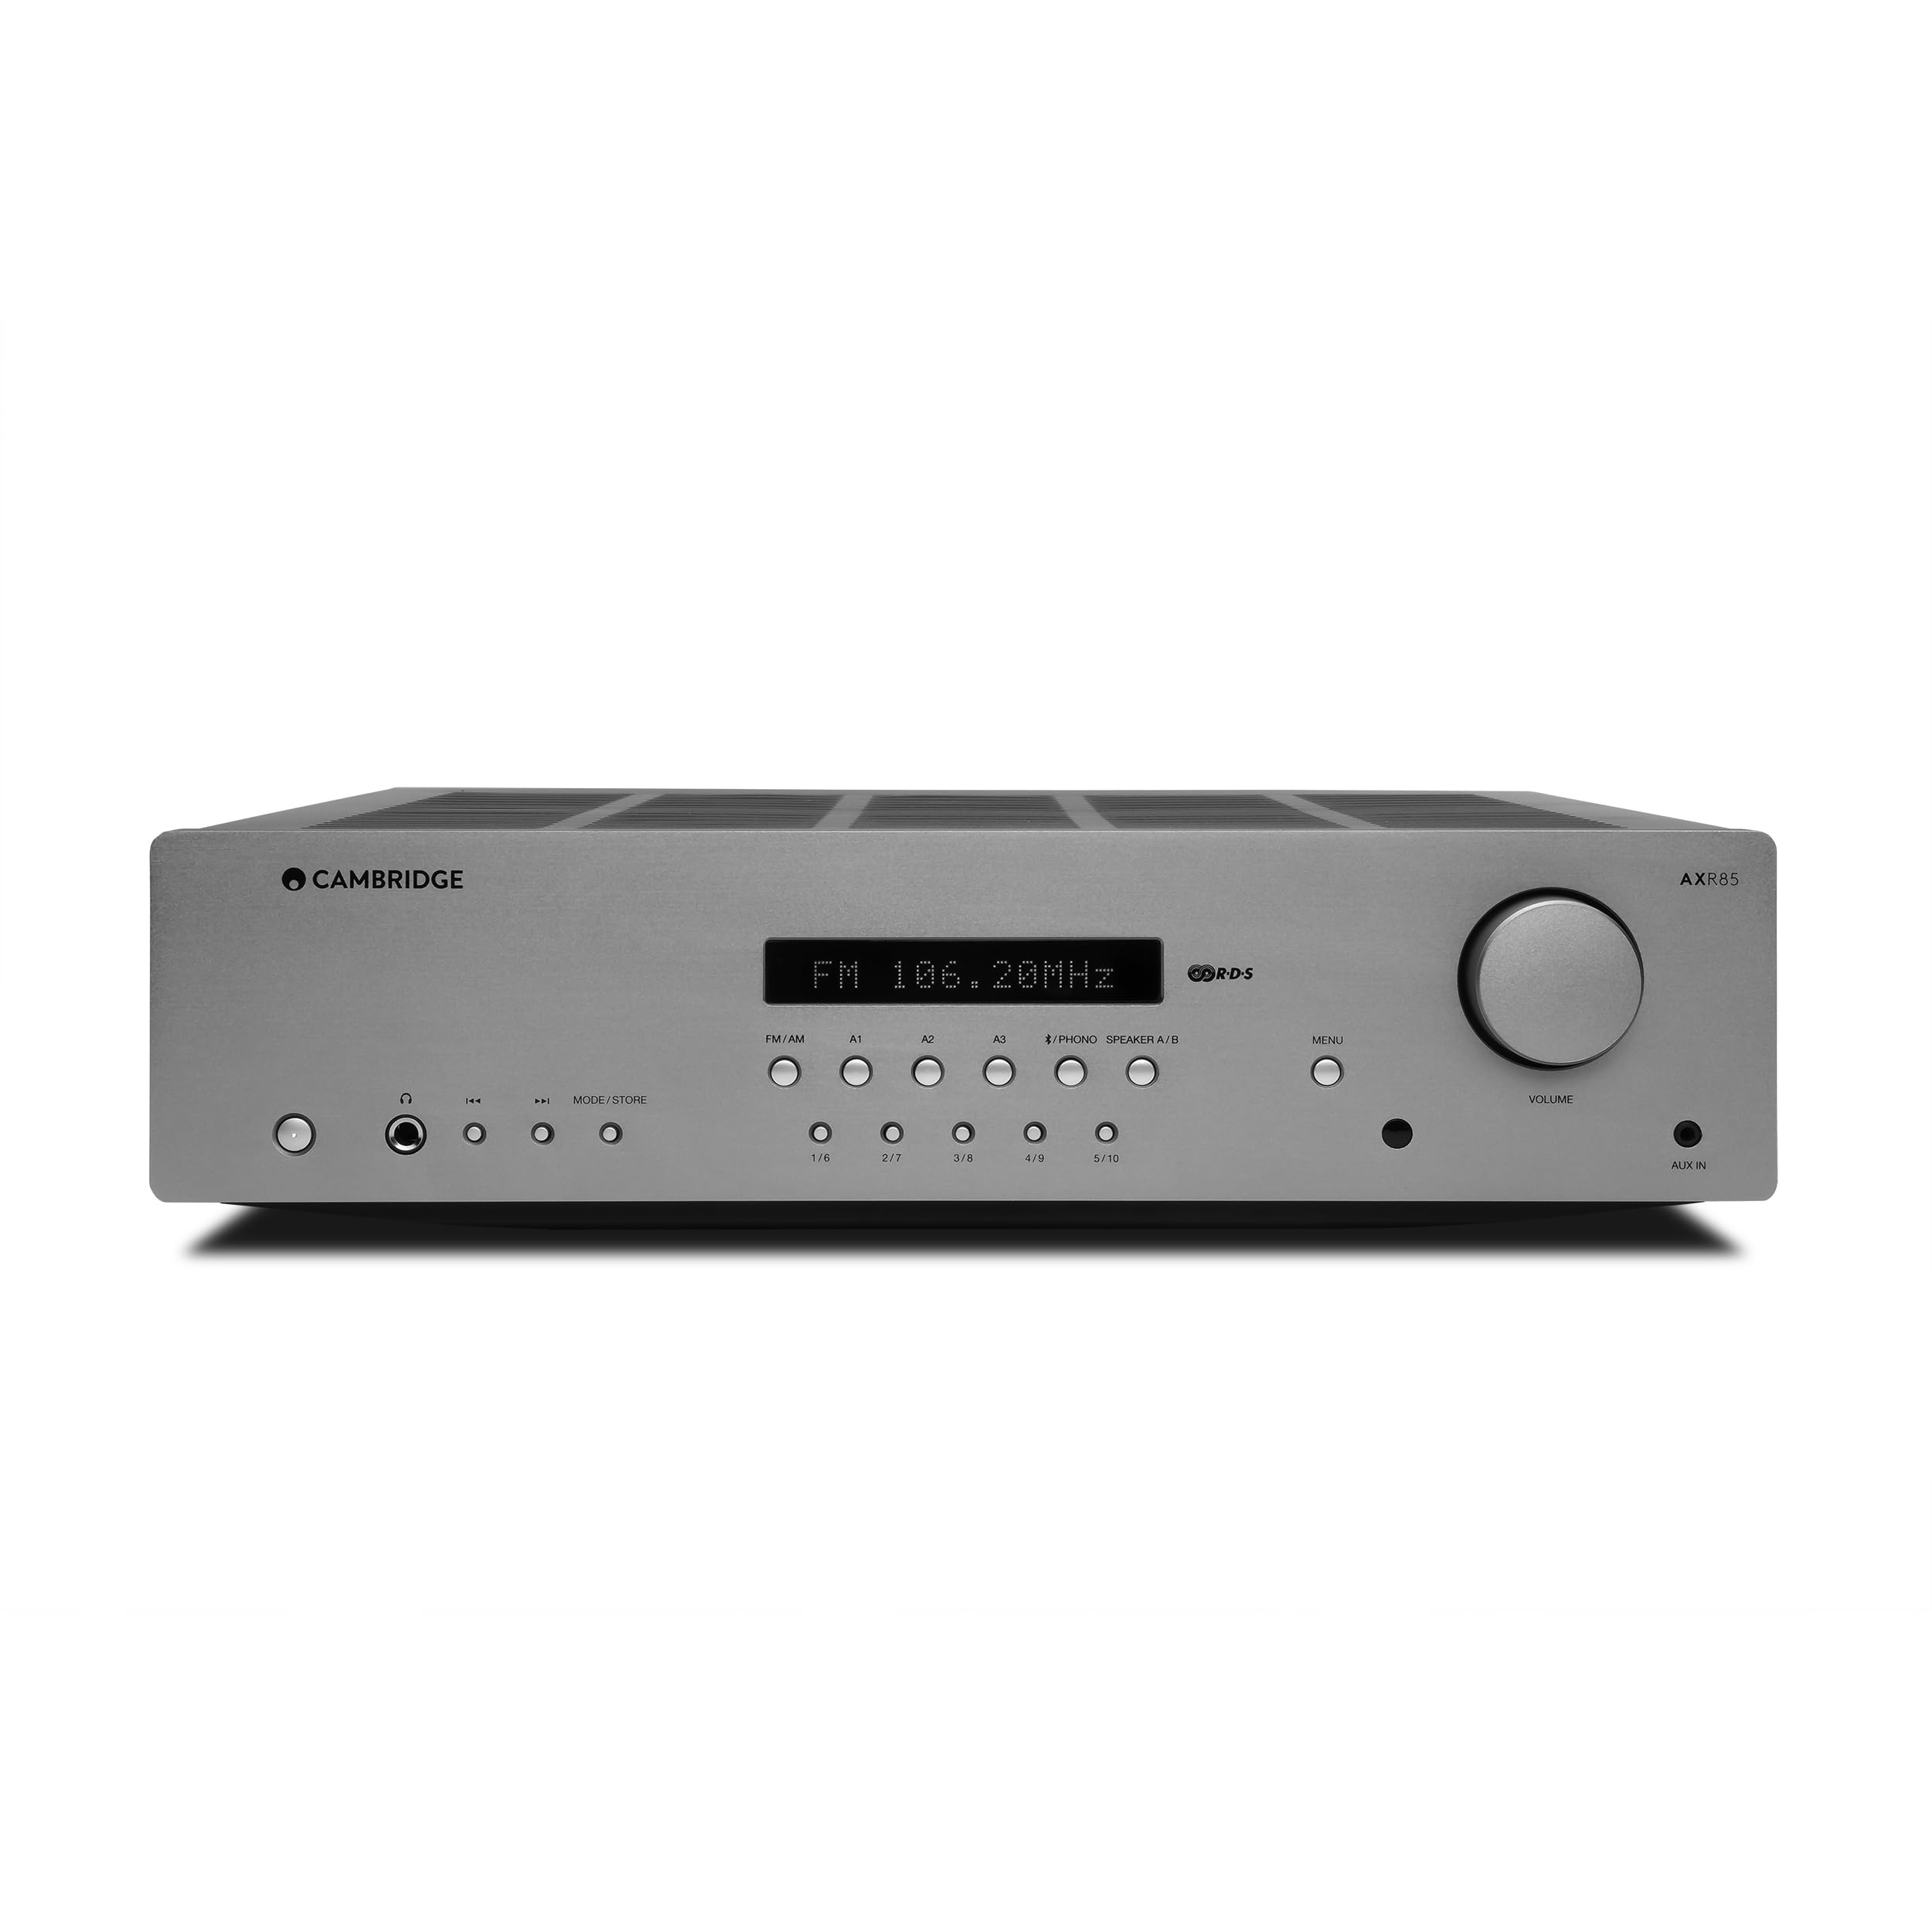 Cambridge Audio AXR85-85 Watt separater HiFi-Stereoreceiver mit integrierter Phonostufe, FM/AM-Radio und Bluetooth 5.0 - Lunar Grey